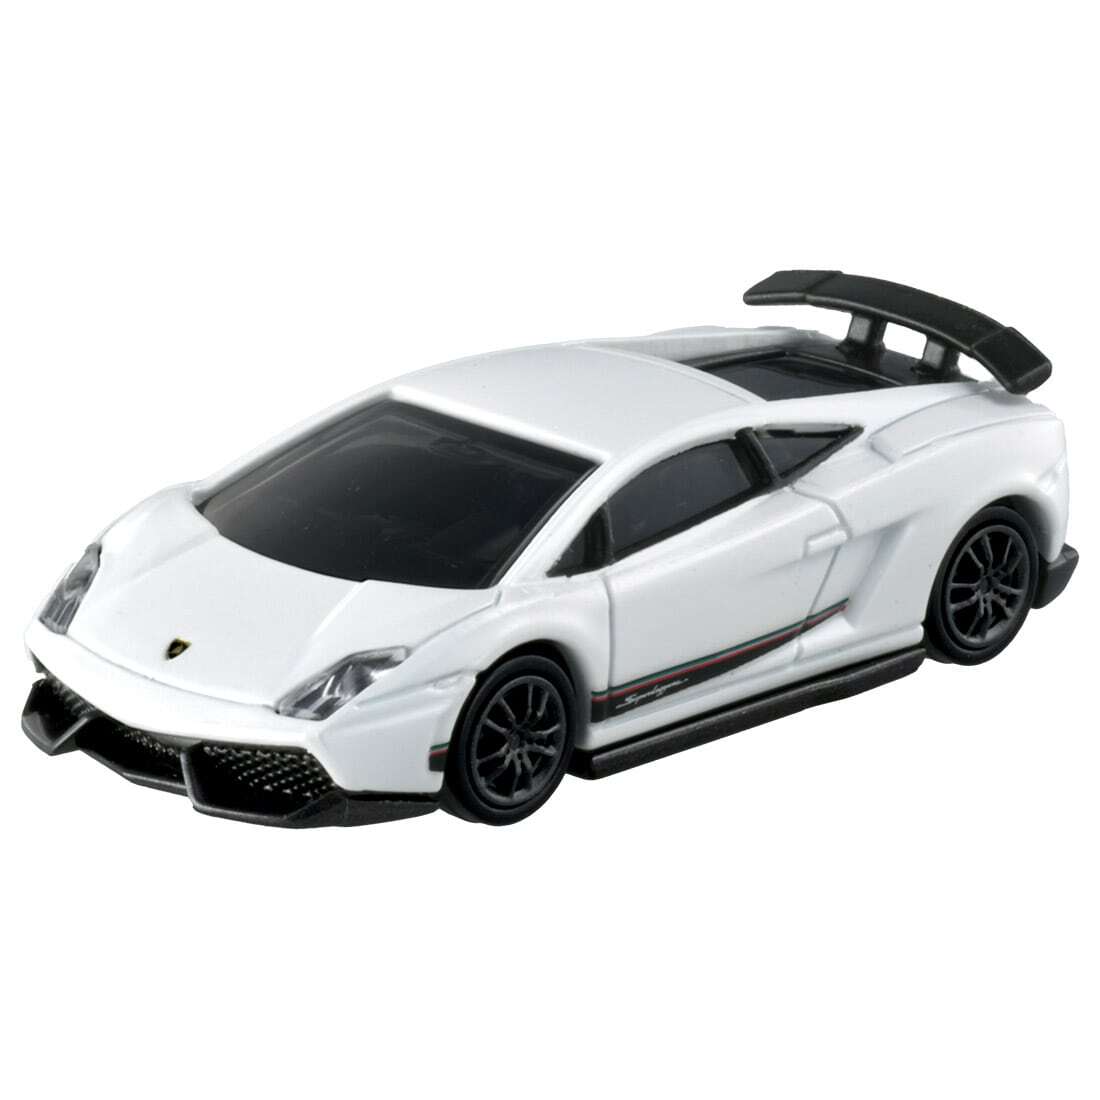 トミカプレミアム Lamborghini 3MODELS | ANKGLID Power (アングリッド